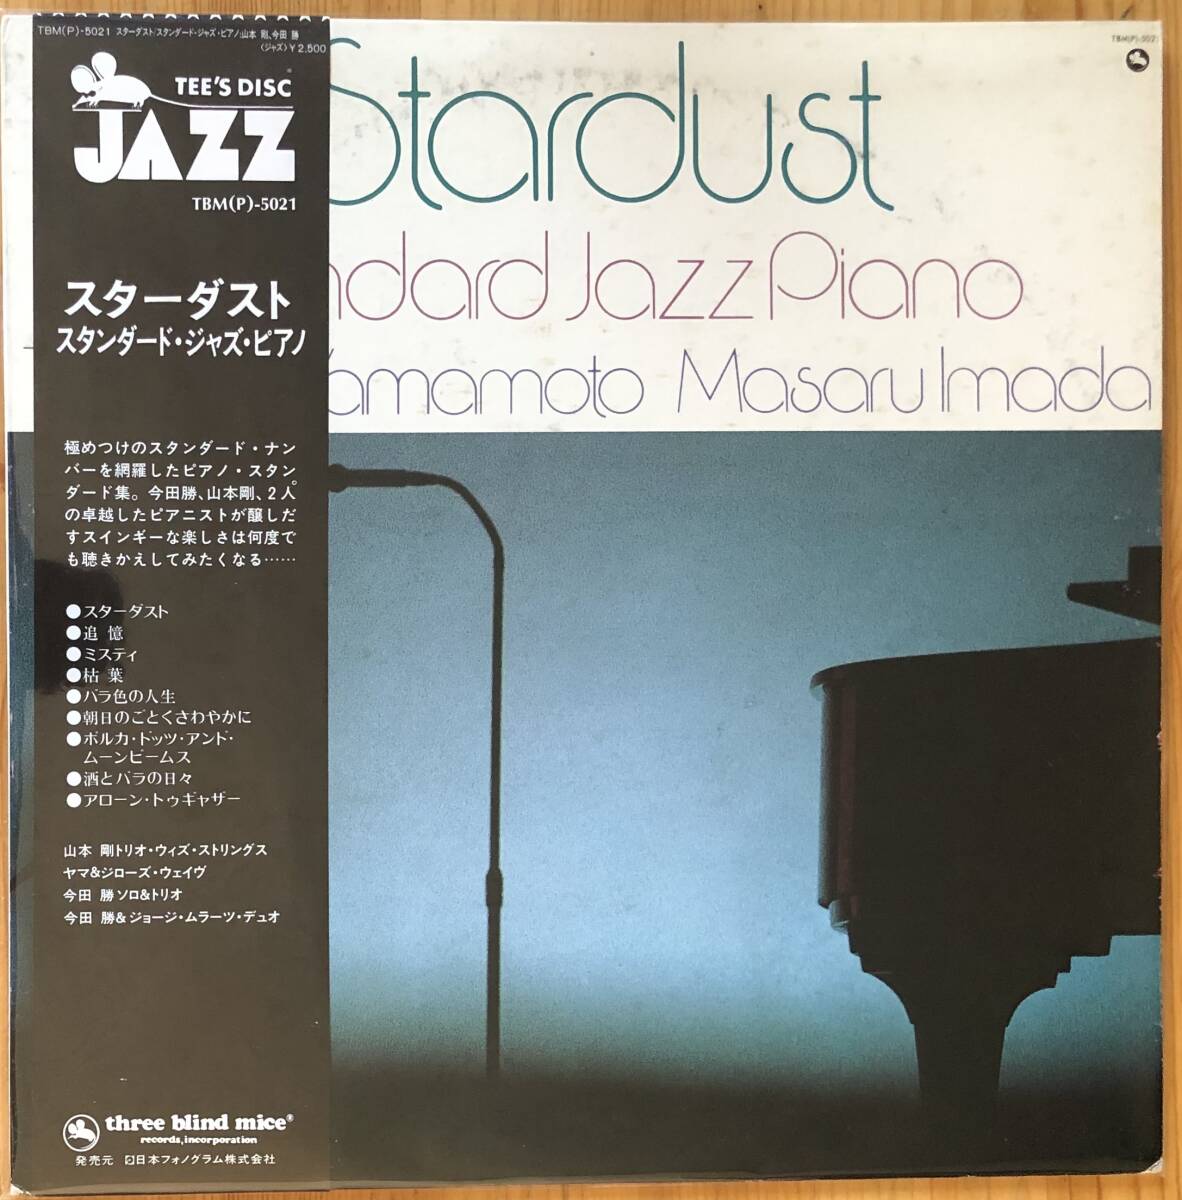 美盤 山本剛 今田勝 / Stardust: Standard Jazz Piano 帯付き LP レコード TBM(P)-5021_画像1